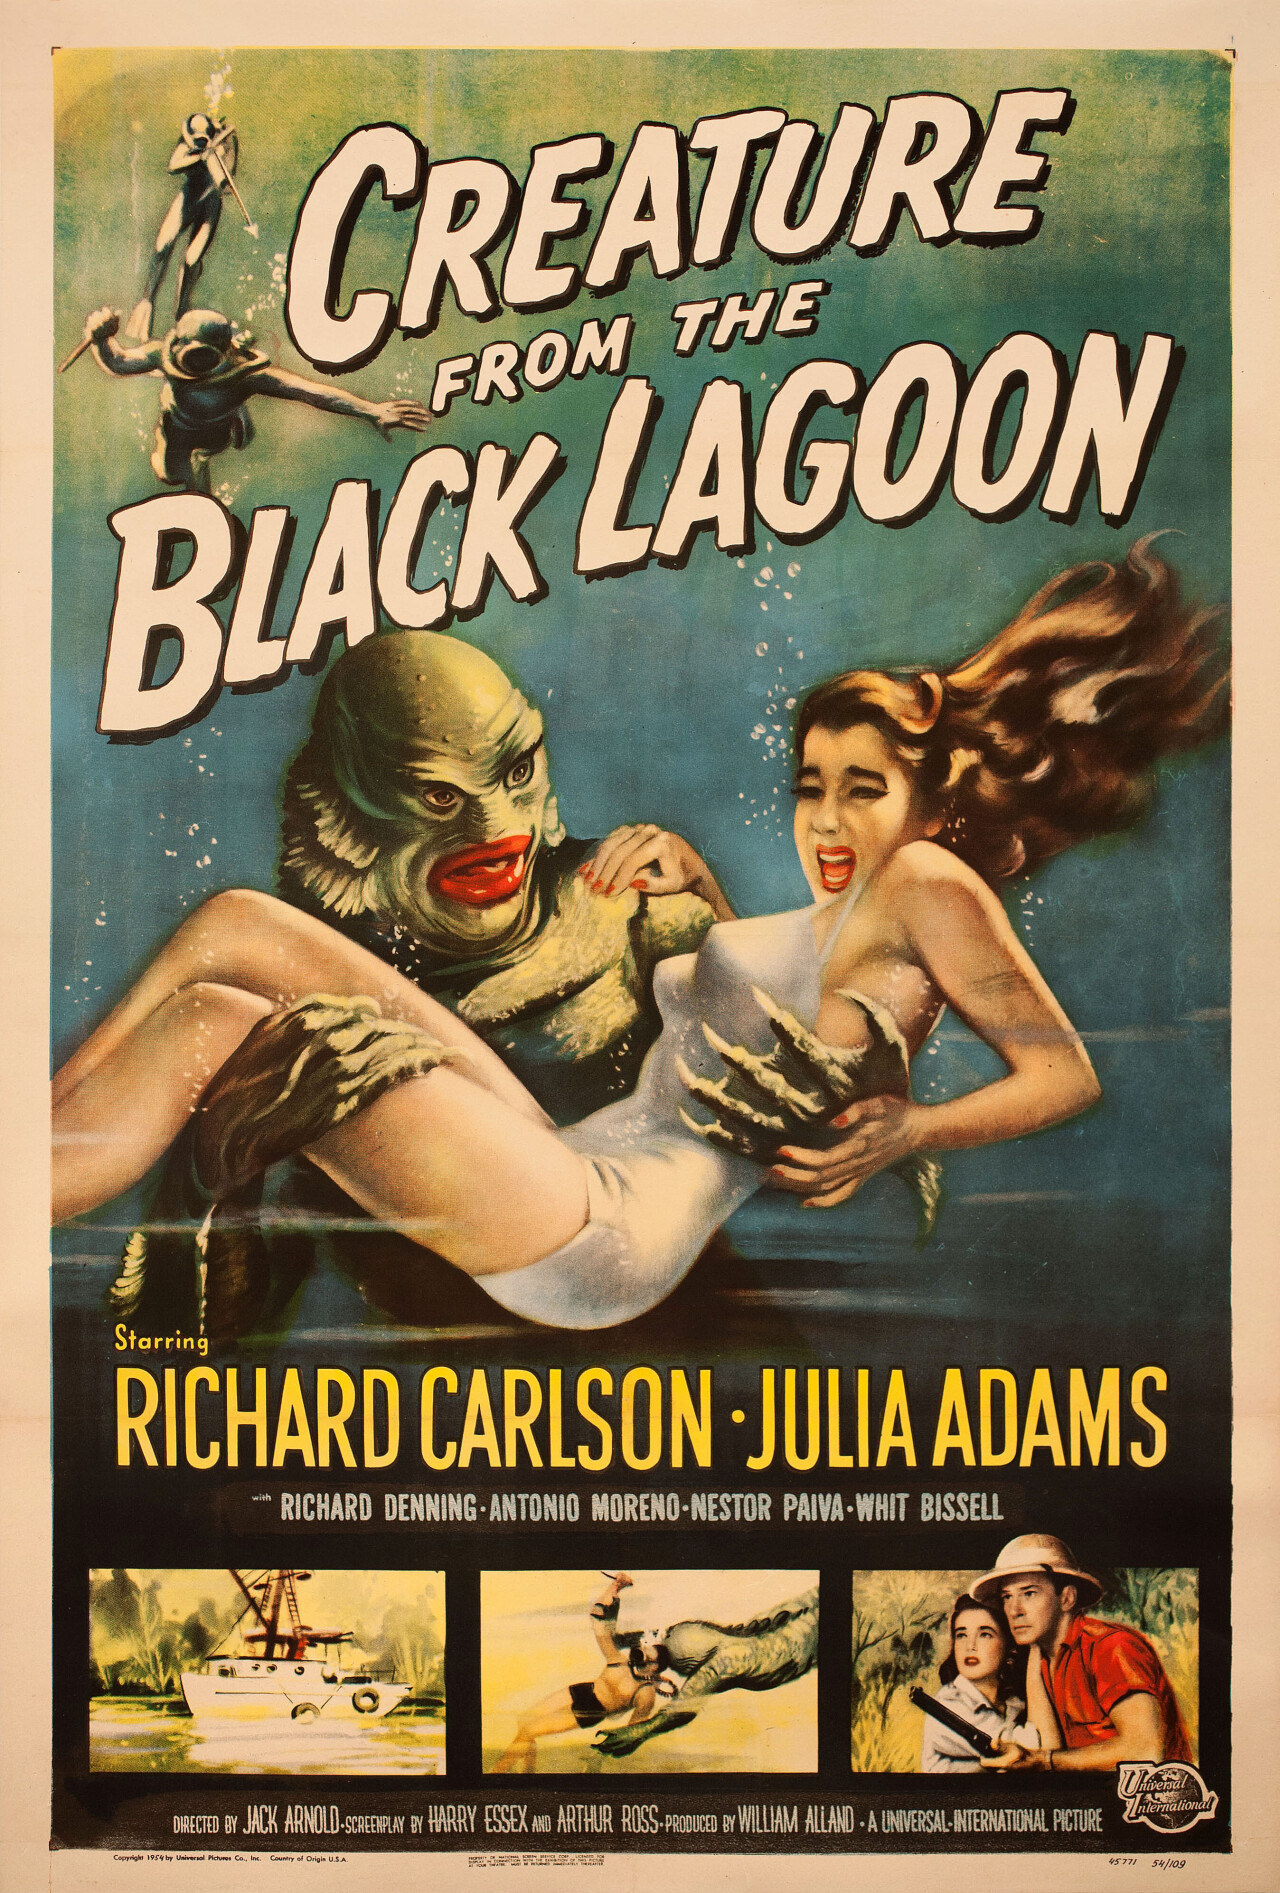 Тварь из Чёрной лагуны (Creature from the Black Lagoon, 1954), режиссёр Джек Арнольд, американский постер к фильму, автор Рейнольд Браун (монстры, 1954 год)